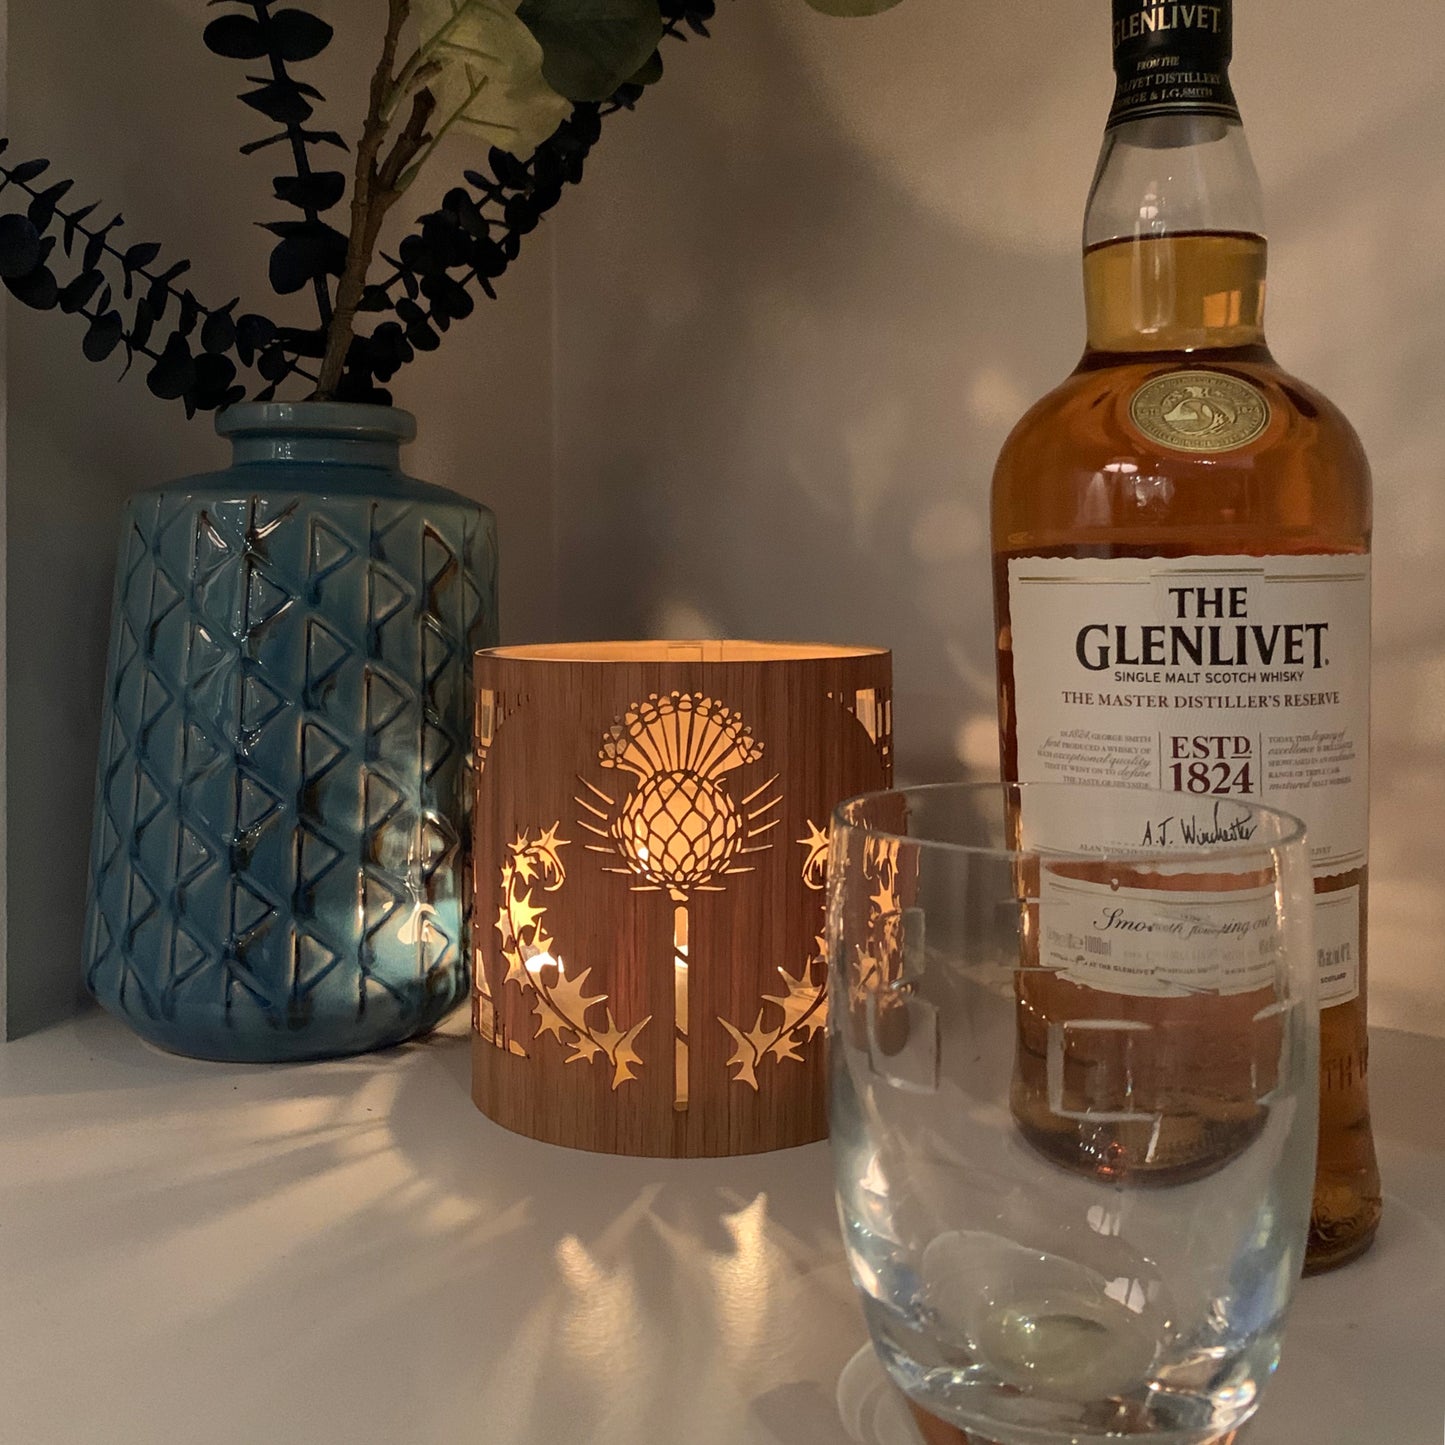 thistle art lantern in medium white oak  lantern cozy with a bottle of The Glenlivet